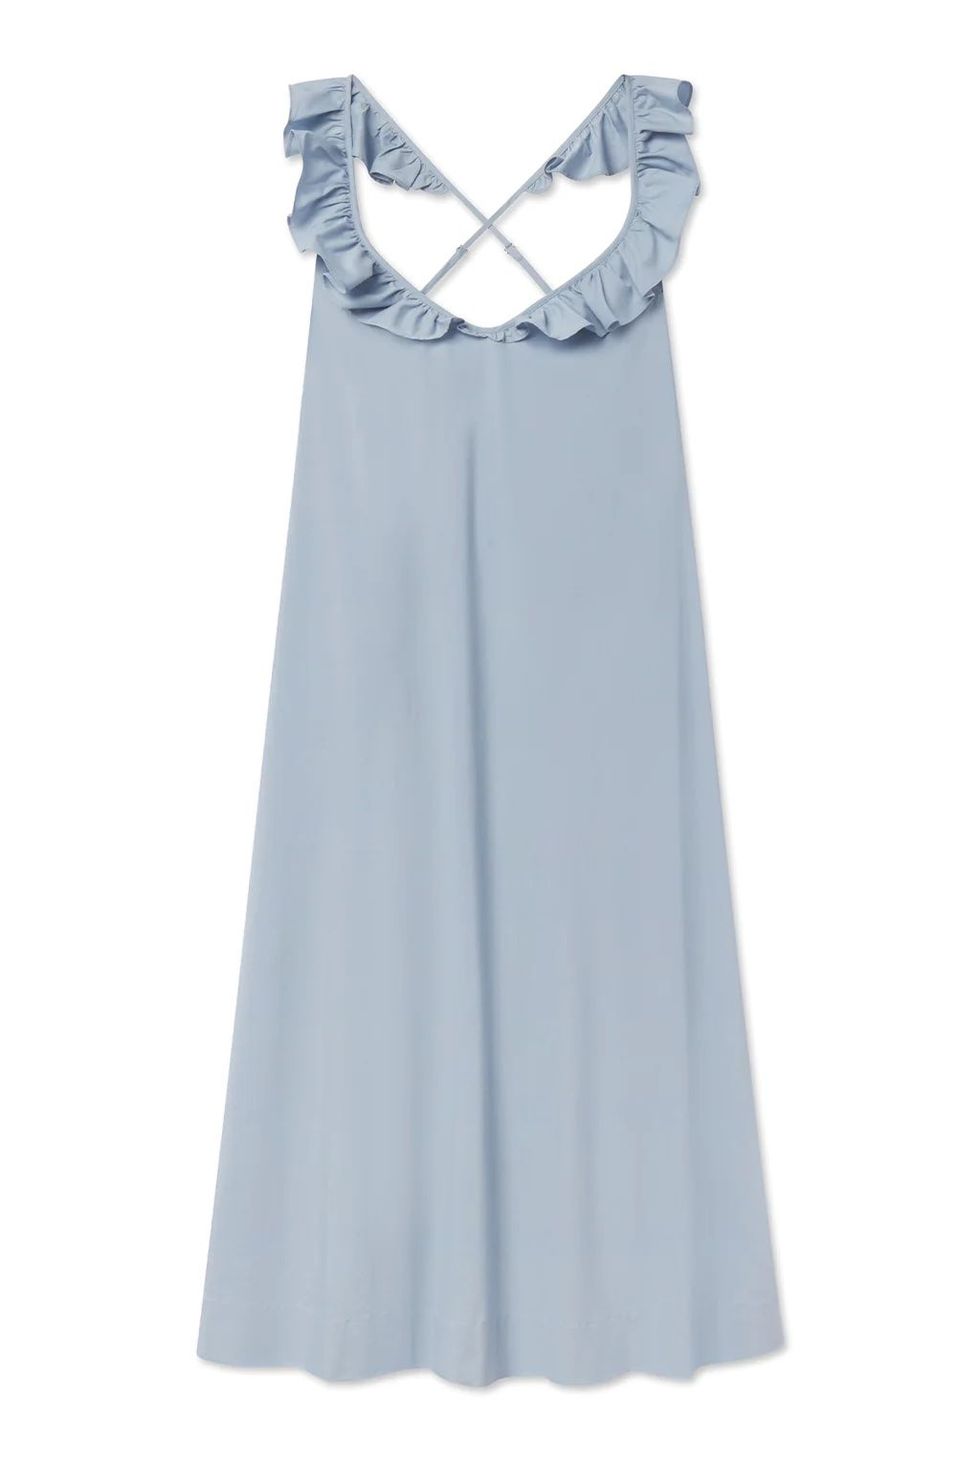 Poplin Amelia Nightgown in Dusty Blue